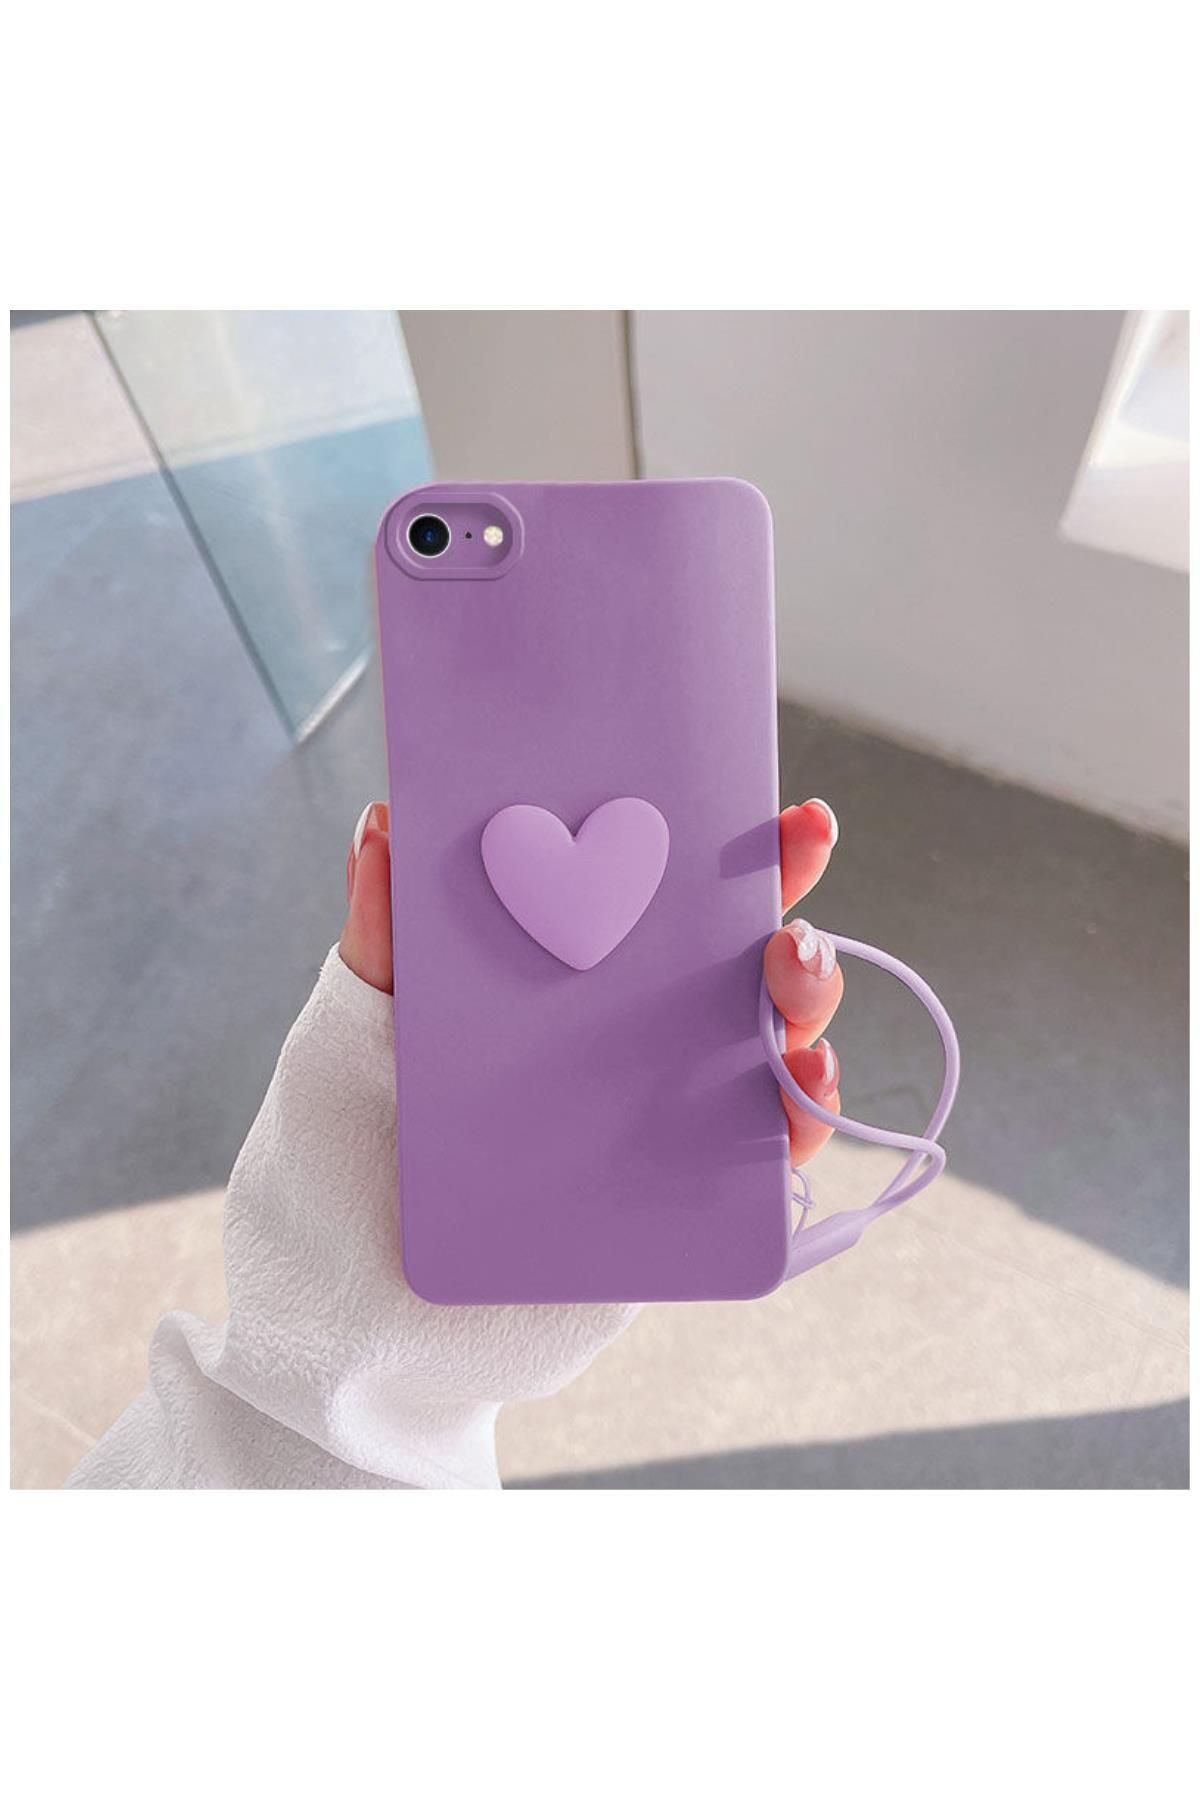 Zebana Apple Iphone 7 Uyumlu Kılıf Kalpli Love Silikon Kılıf Lila